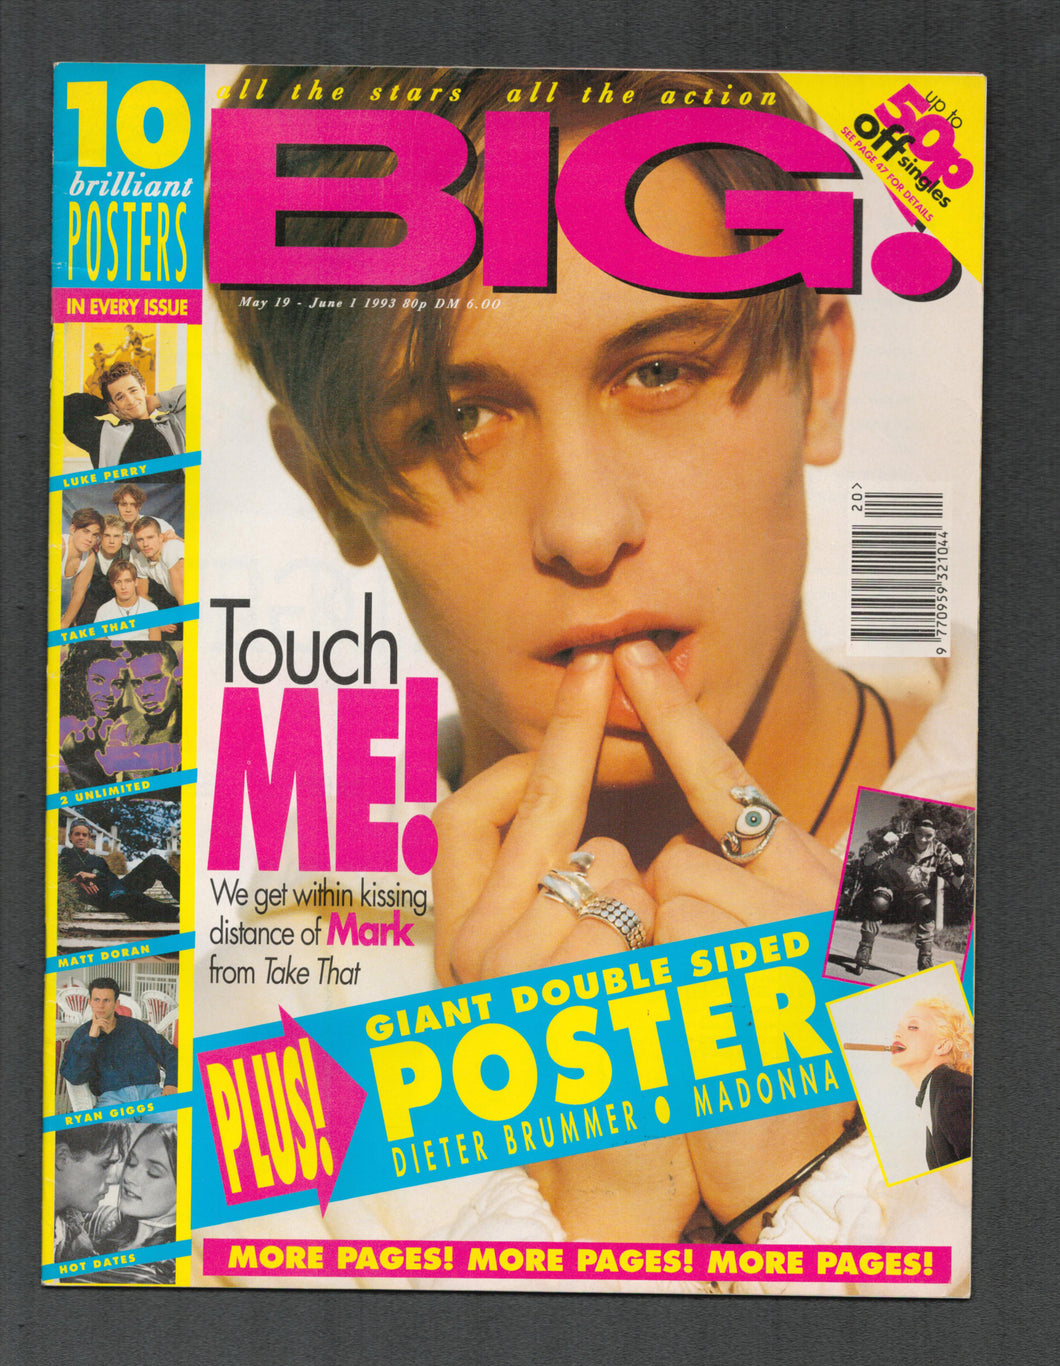 BIG! May 19 - June 1 1993